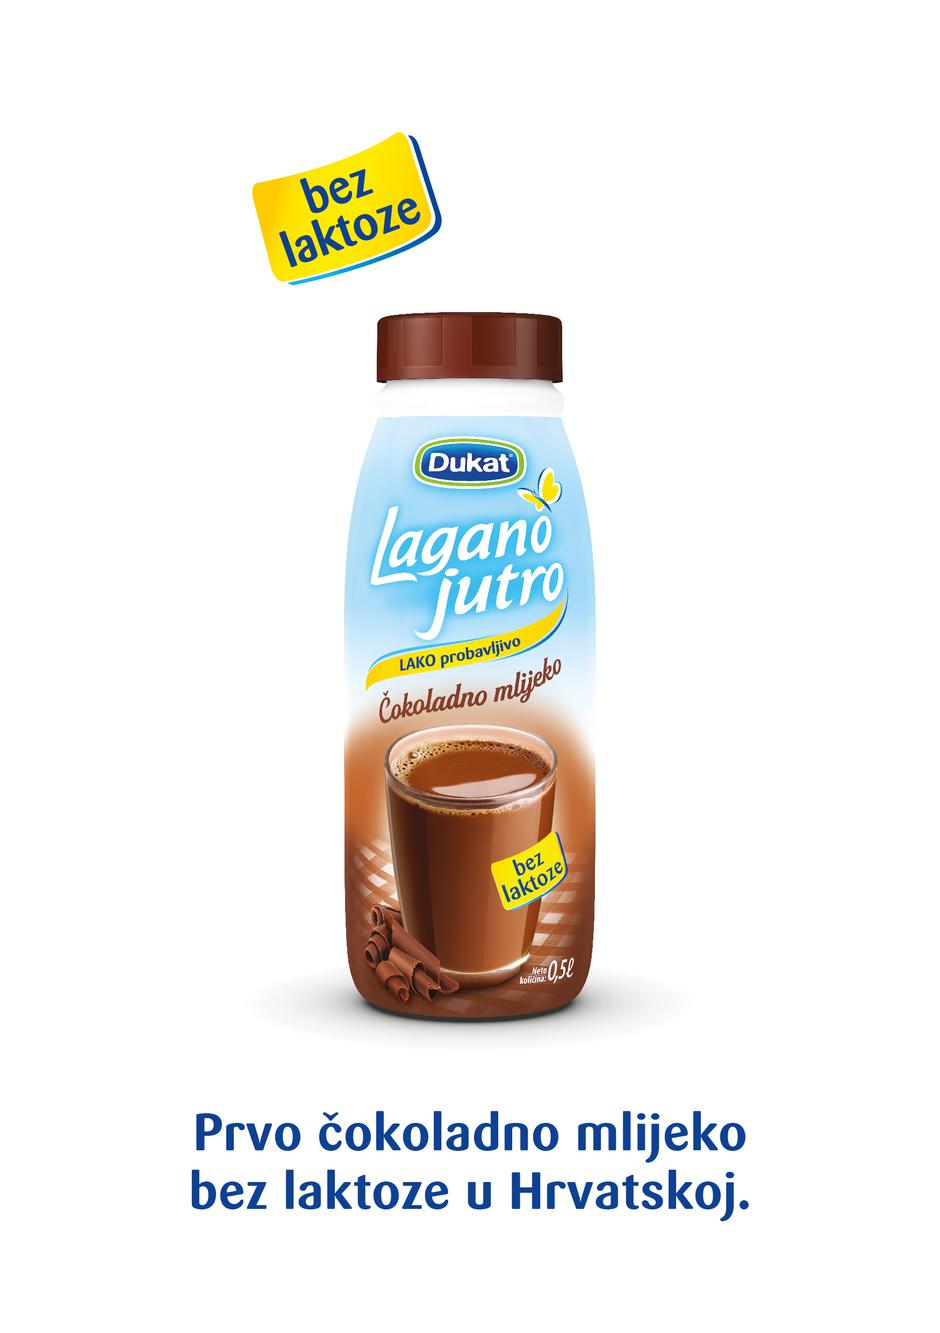 Dukat predstavio prvo čokoladno mlijeko bez laktoze na hrvatskom tržištu